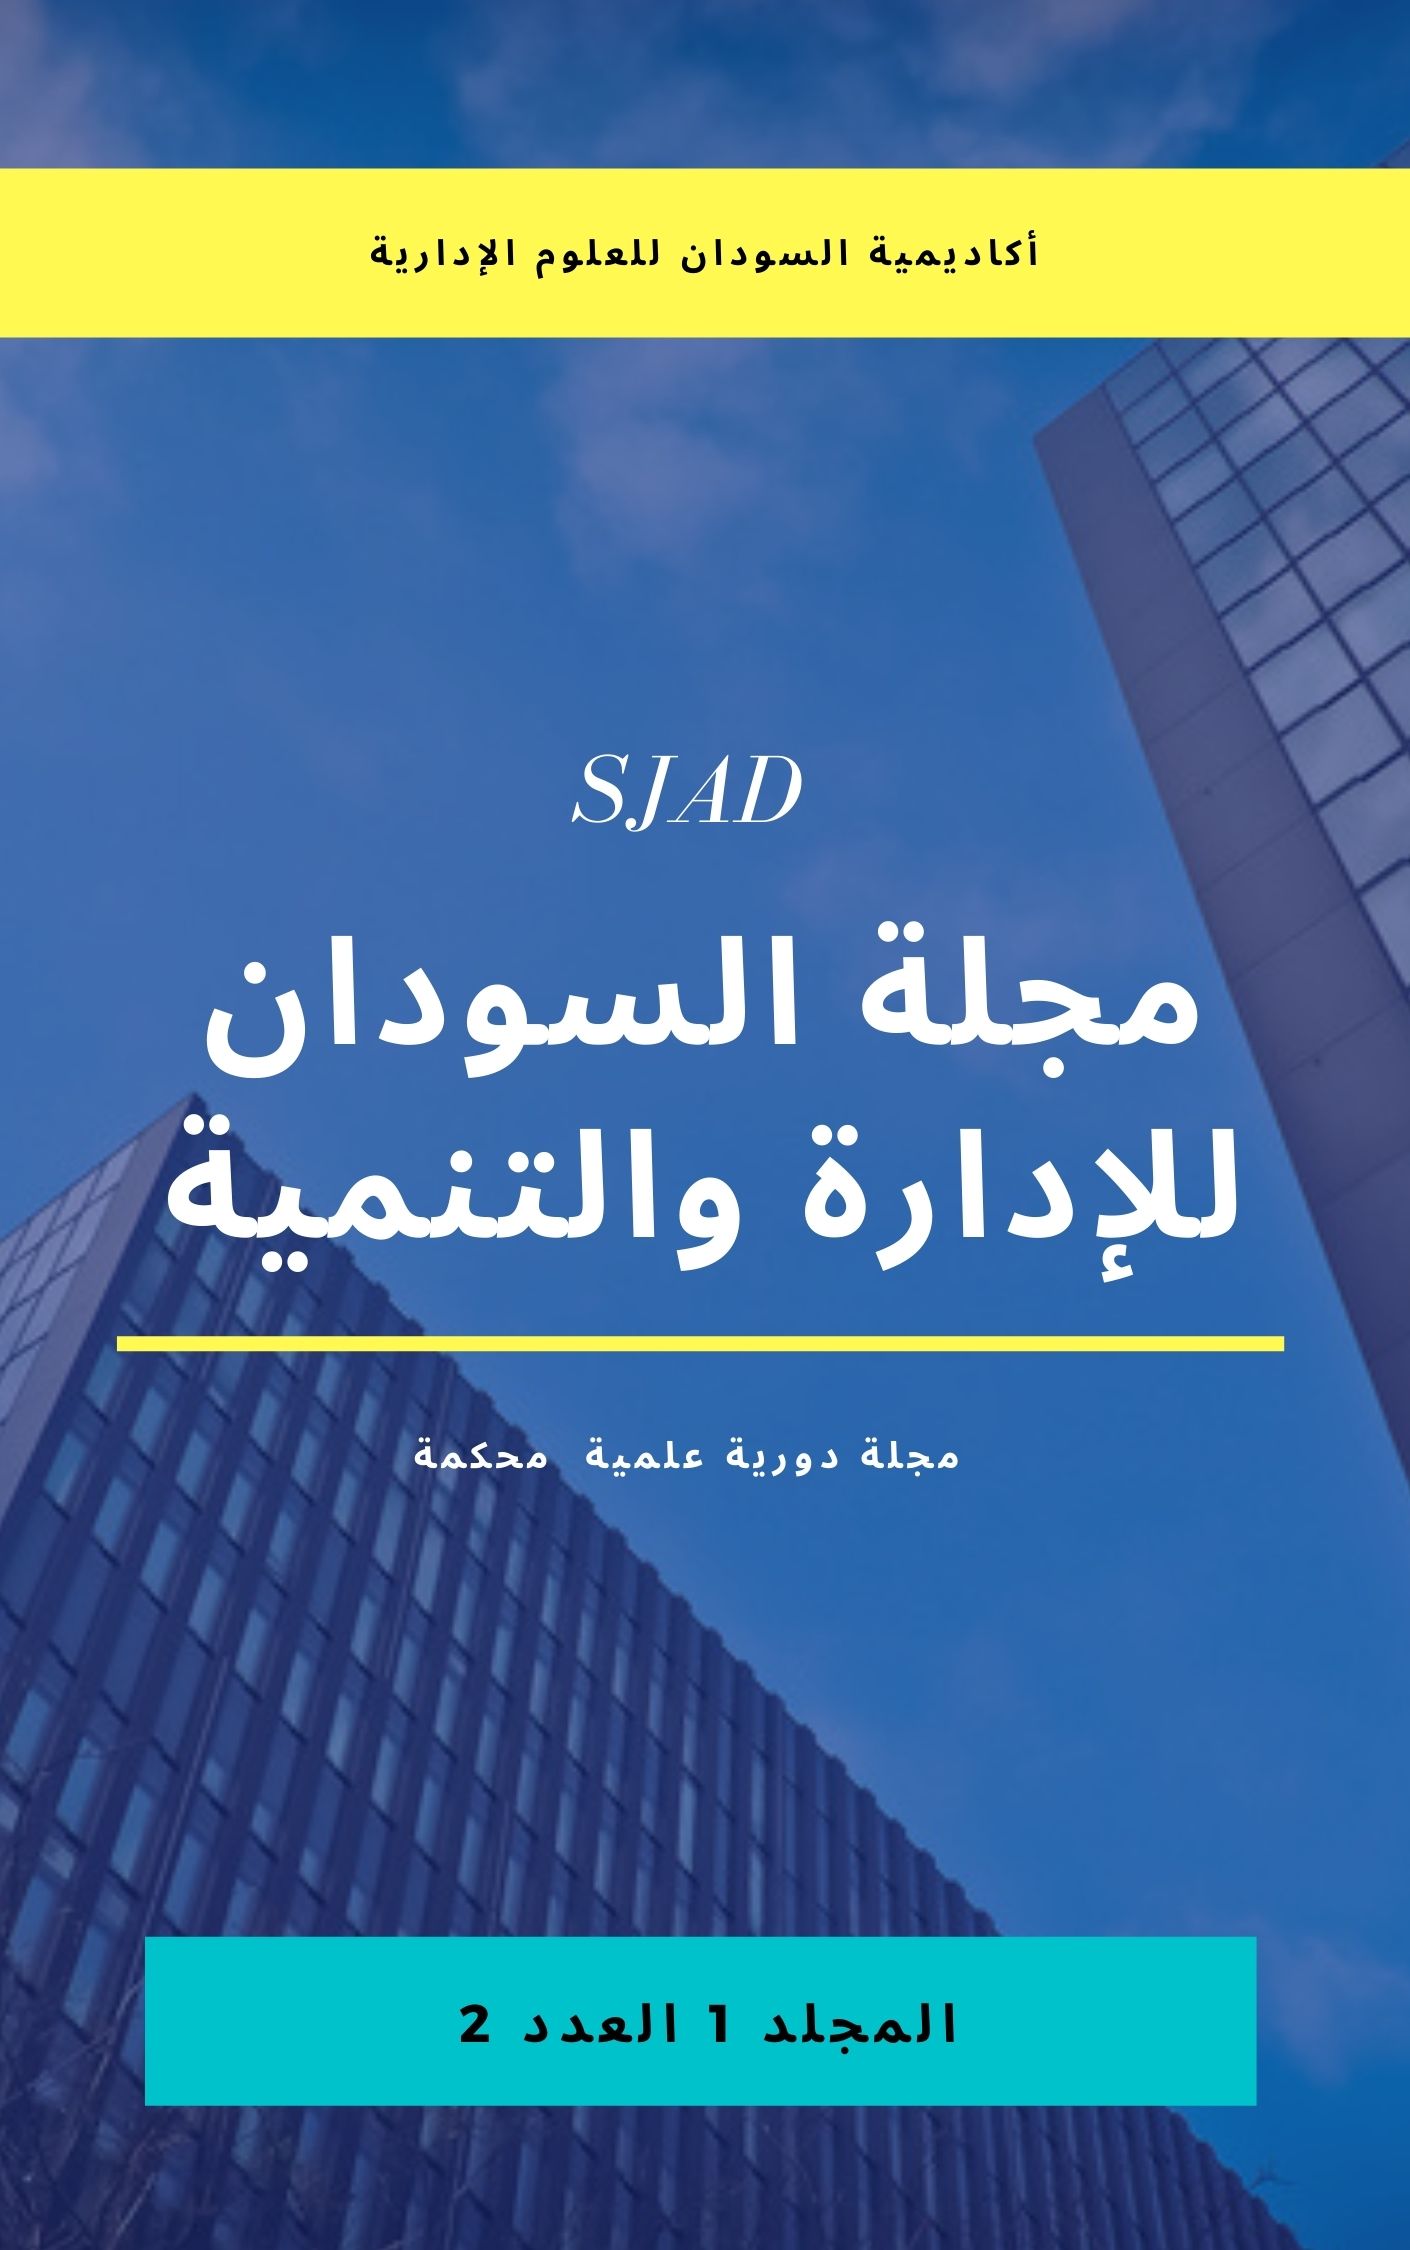 					معاينة مجلد 1 عدد 1 (2): مجلة السودان للإدارة  والتنمية
				